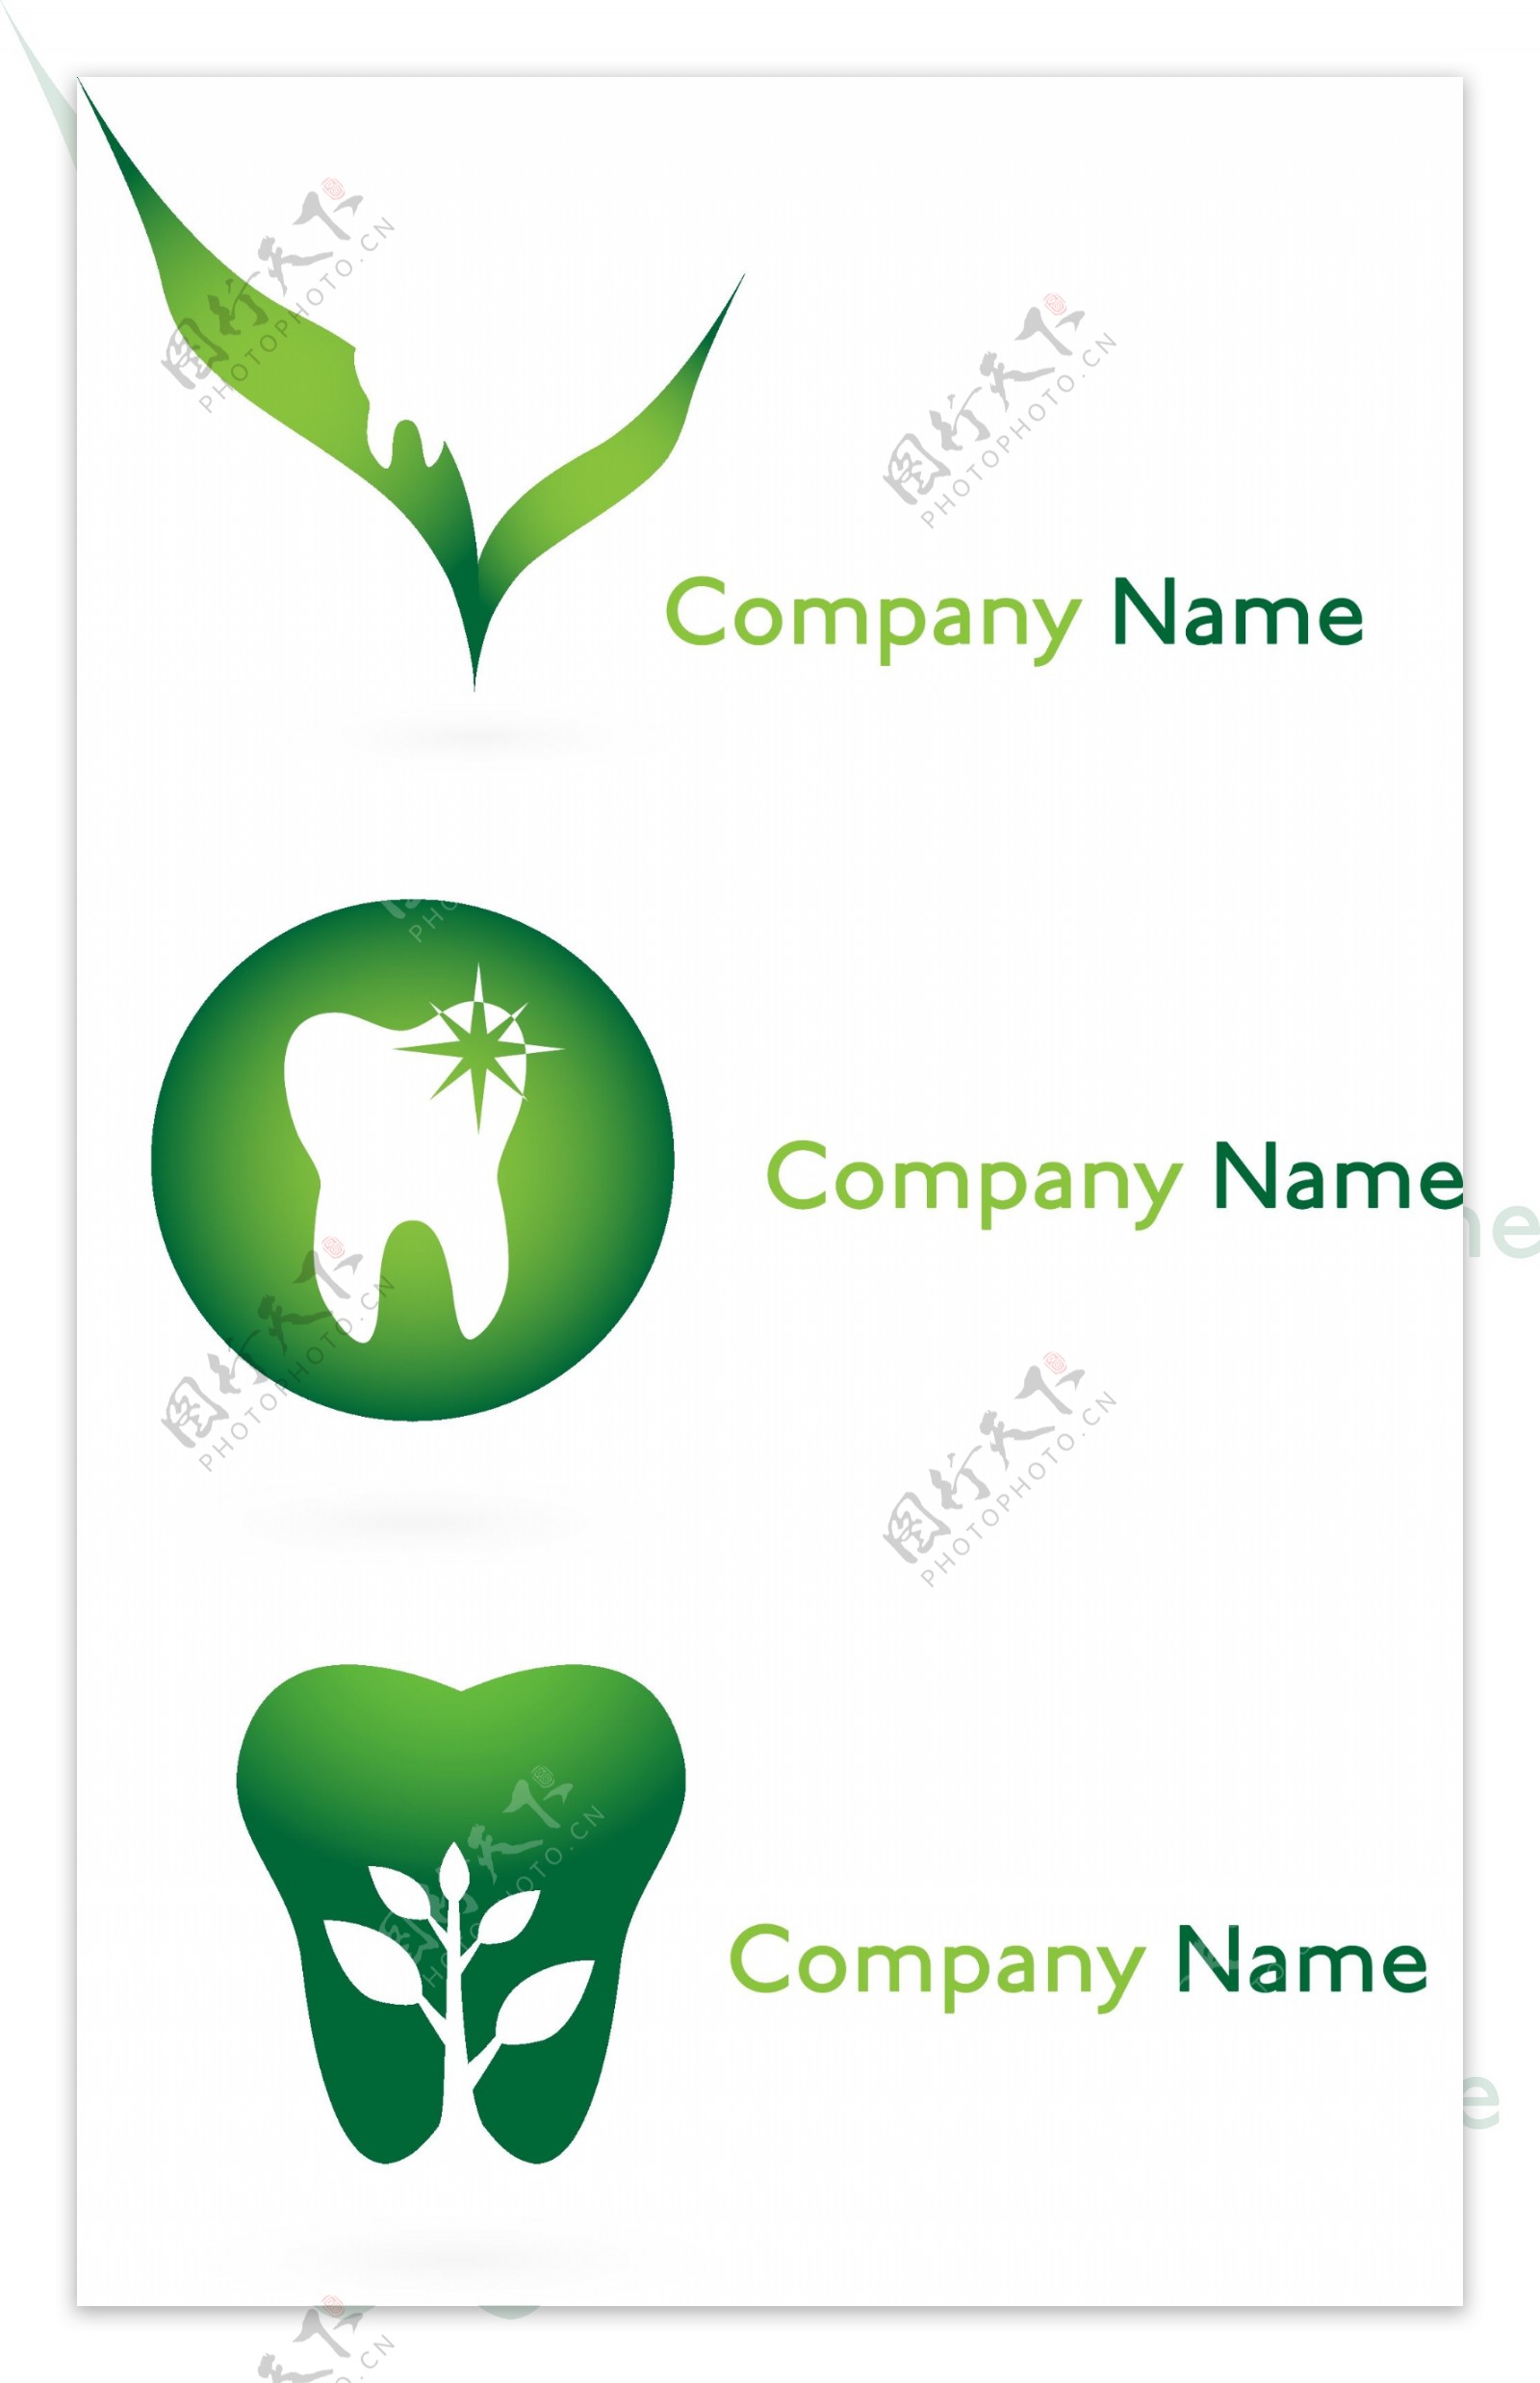 牙齿logo图片